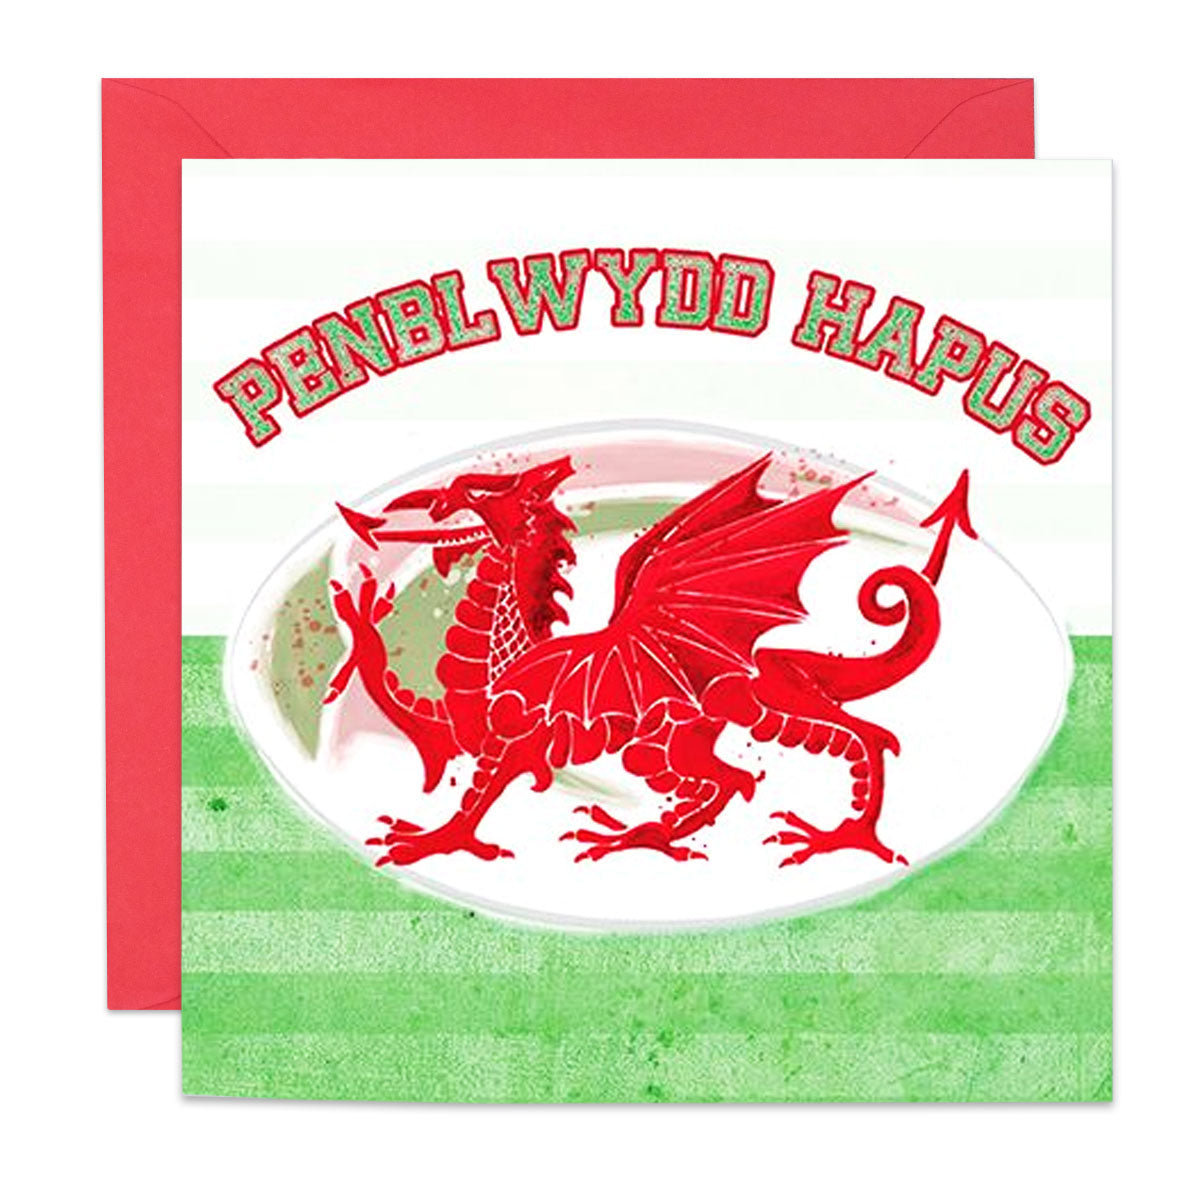 Penblwydd Hapus Rugby Card